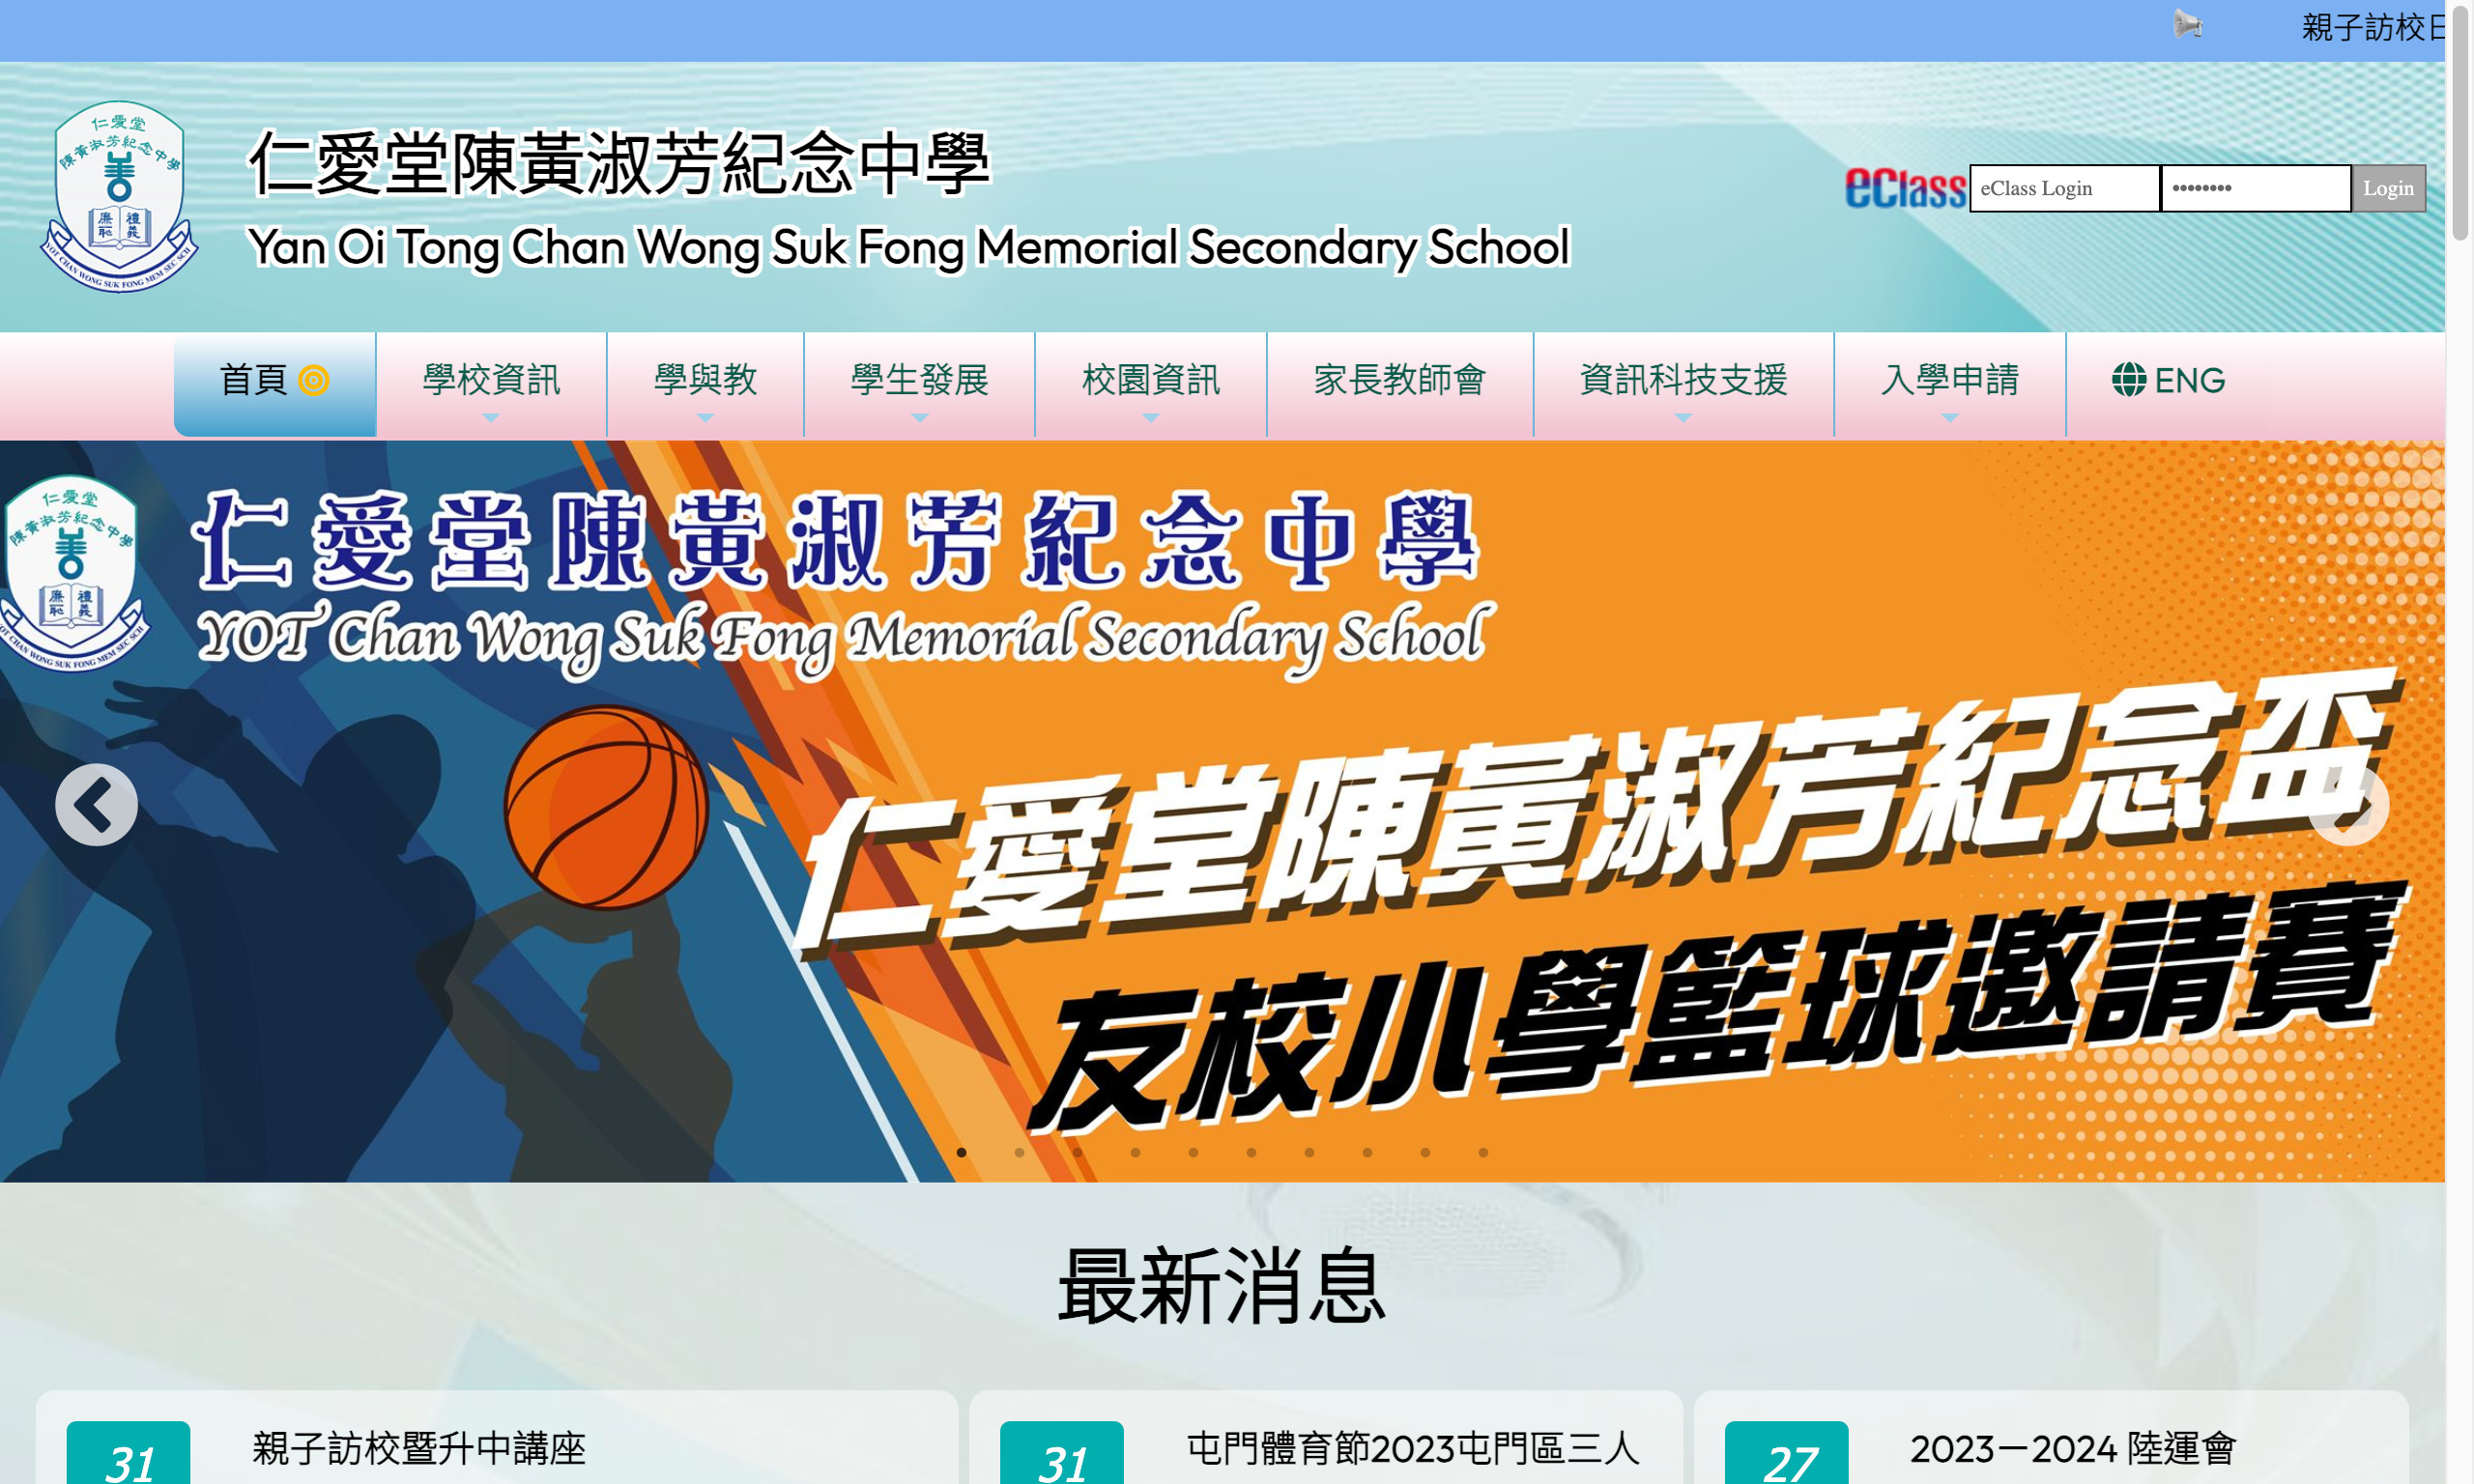 Screenshot of the Home Page of Yan Oi Tong Chan Wong Suk Fong Memorial Secondary School